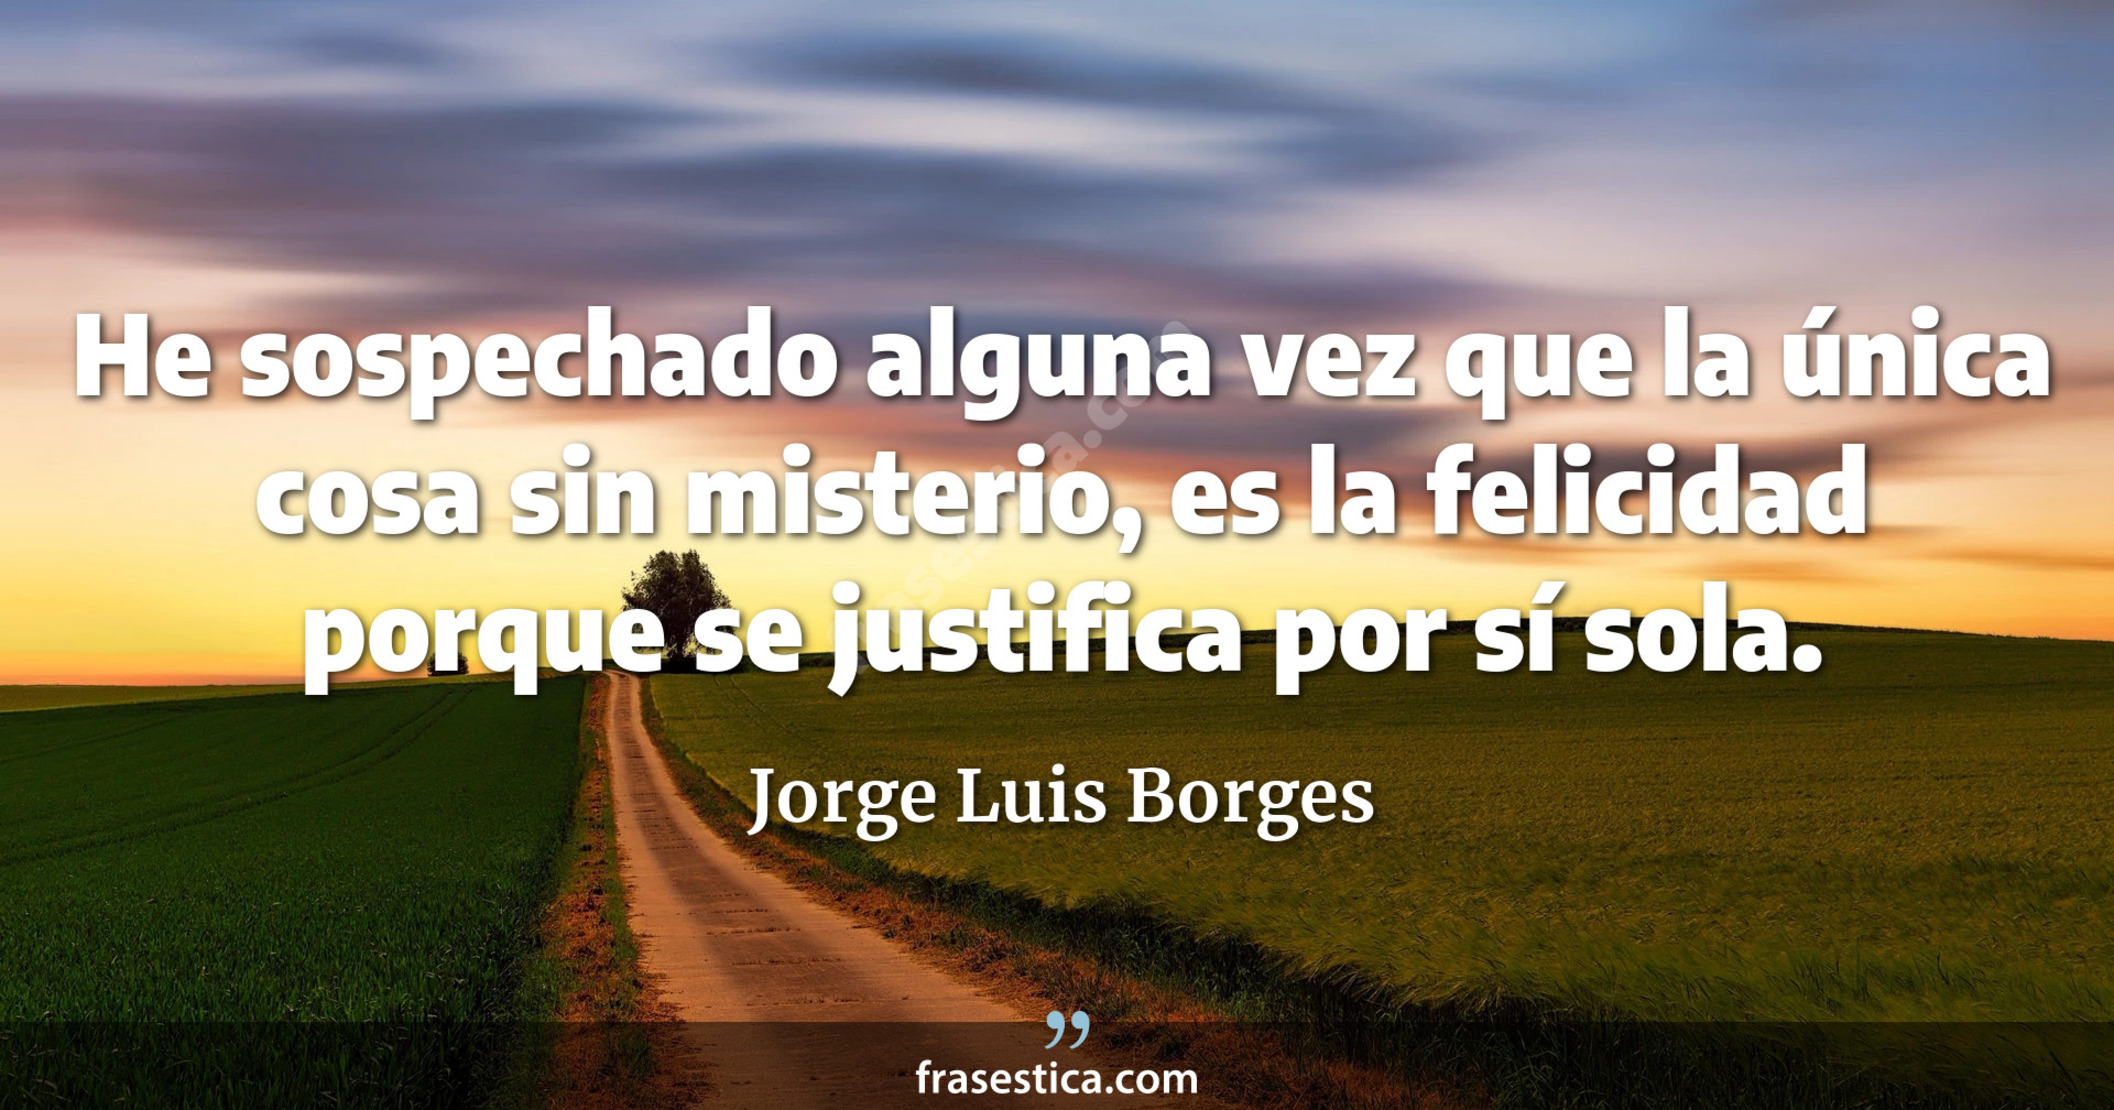 He sospechado alguna vez que la única cosa sin misterio, es la felicidad porque se justifica por sí sola. - Jorge Luis Borges